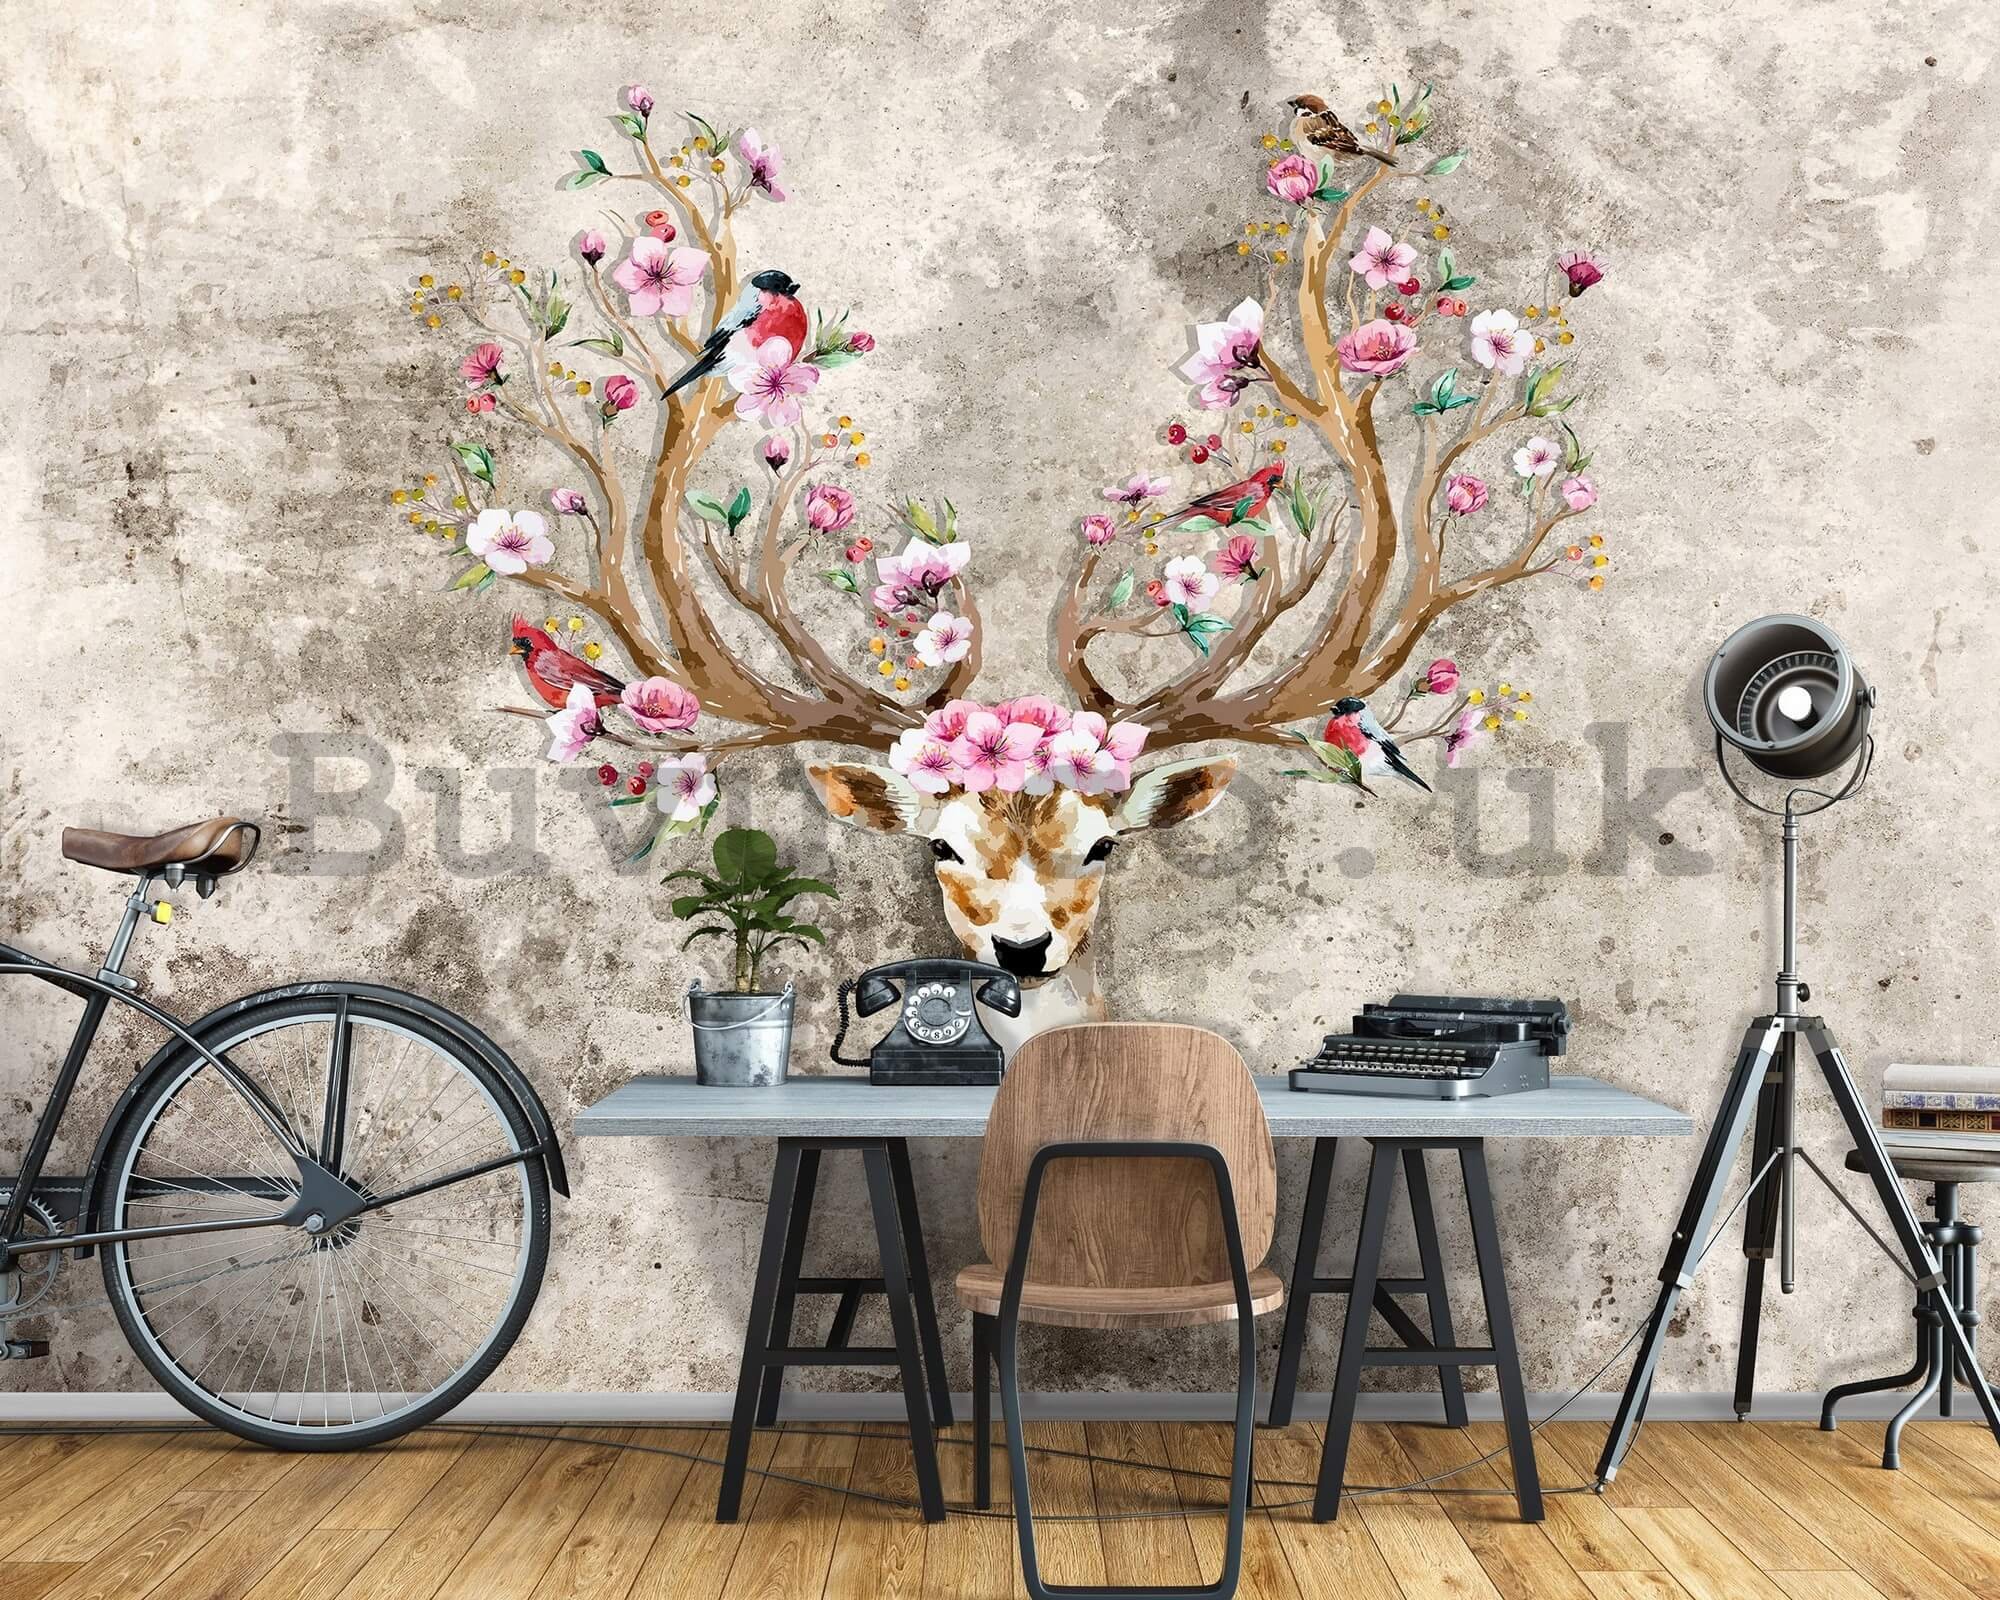 Wall mural vlies: Deer and flowers - 416x254 cm